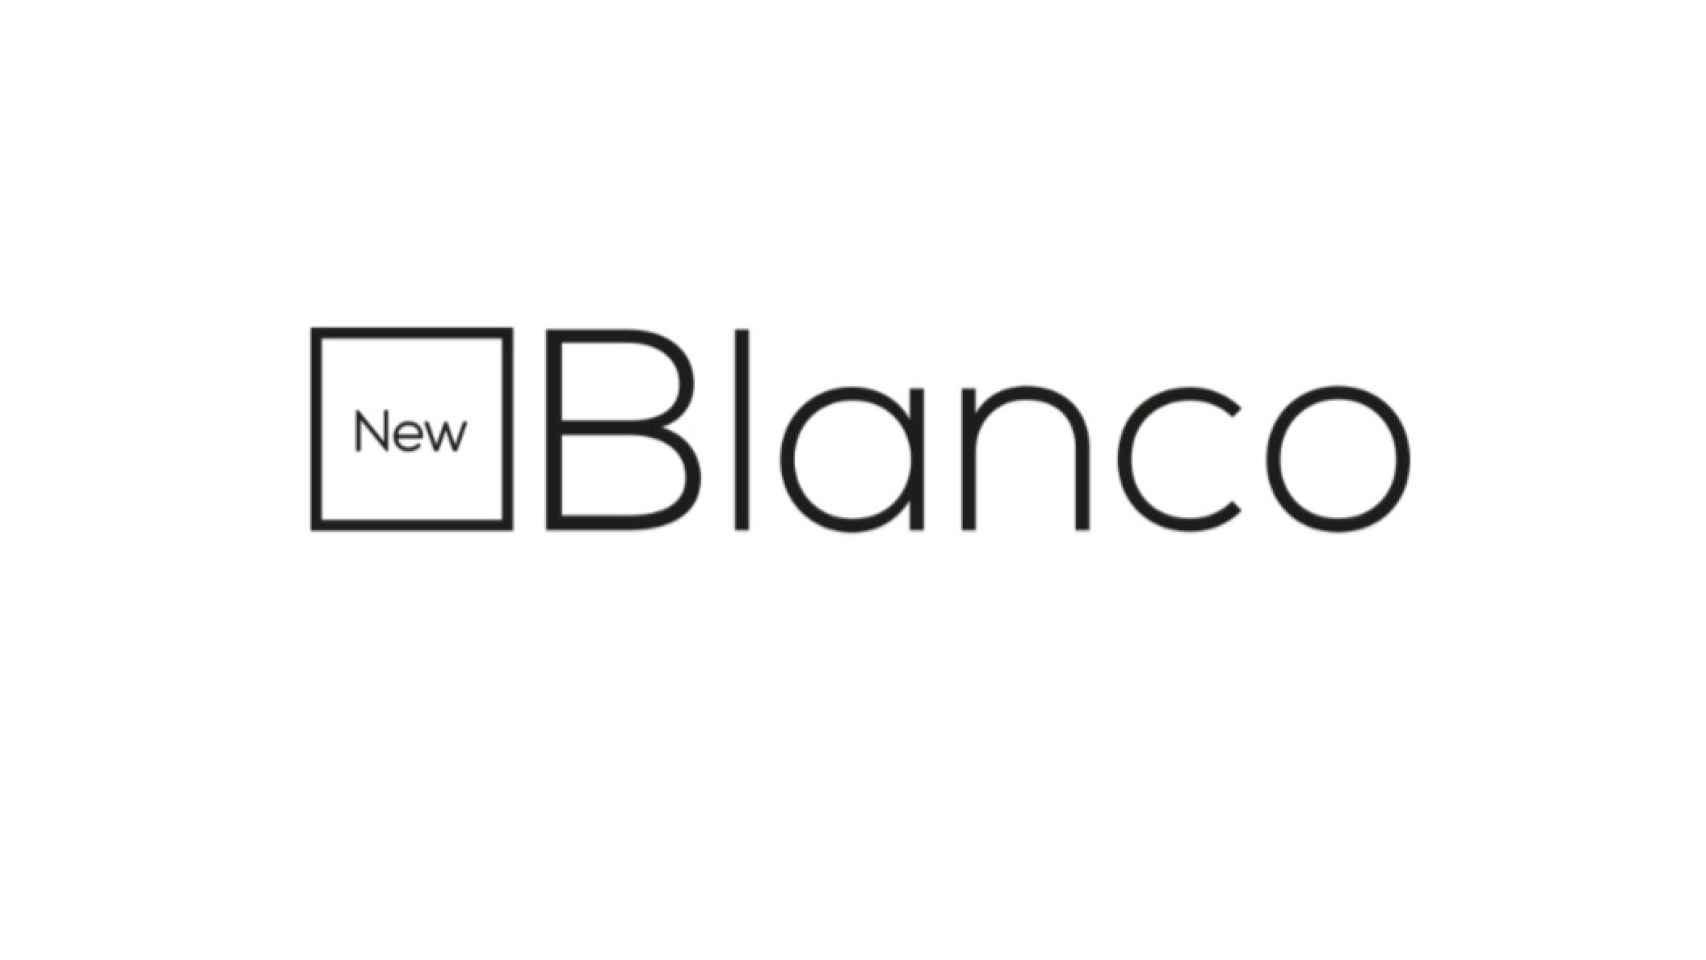 El logo de New Blanco, que pretende ser lo que Blanco fue.